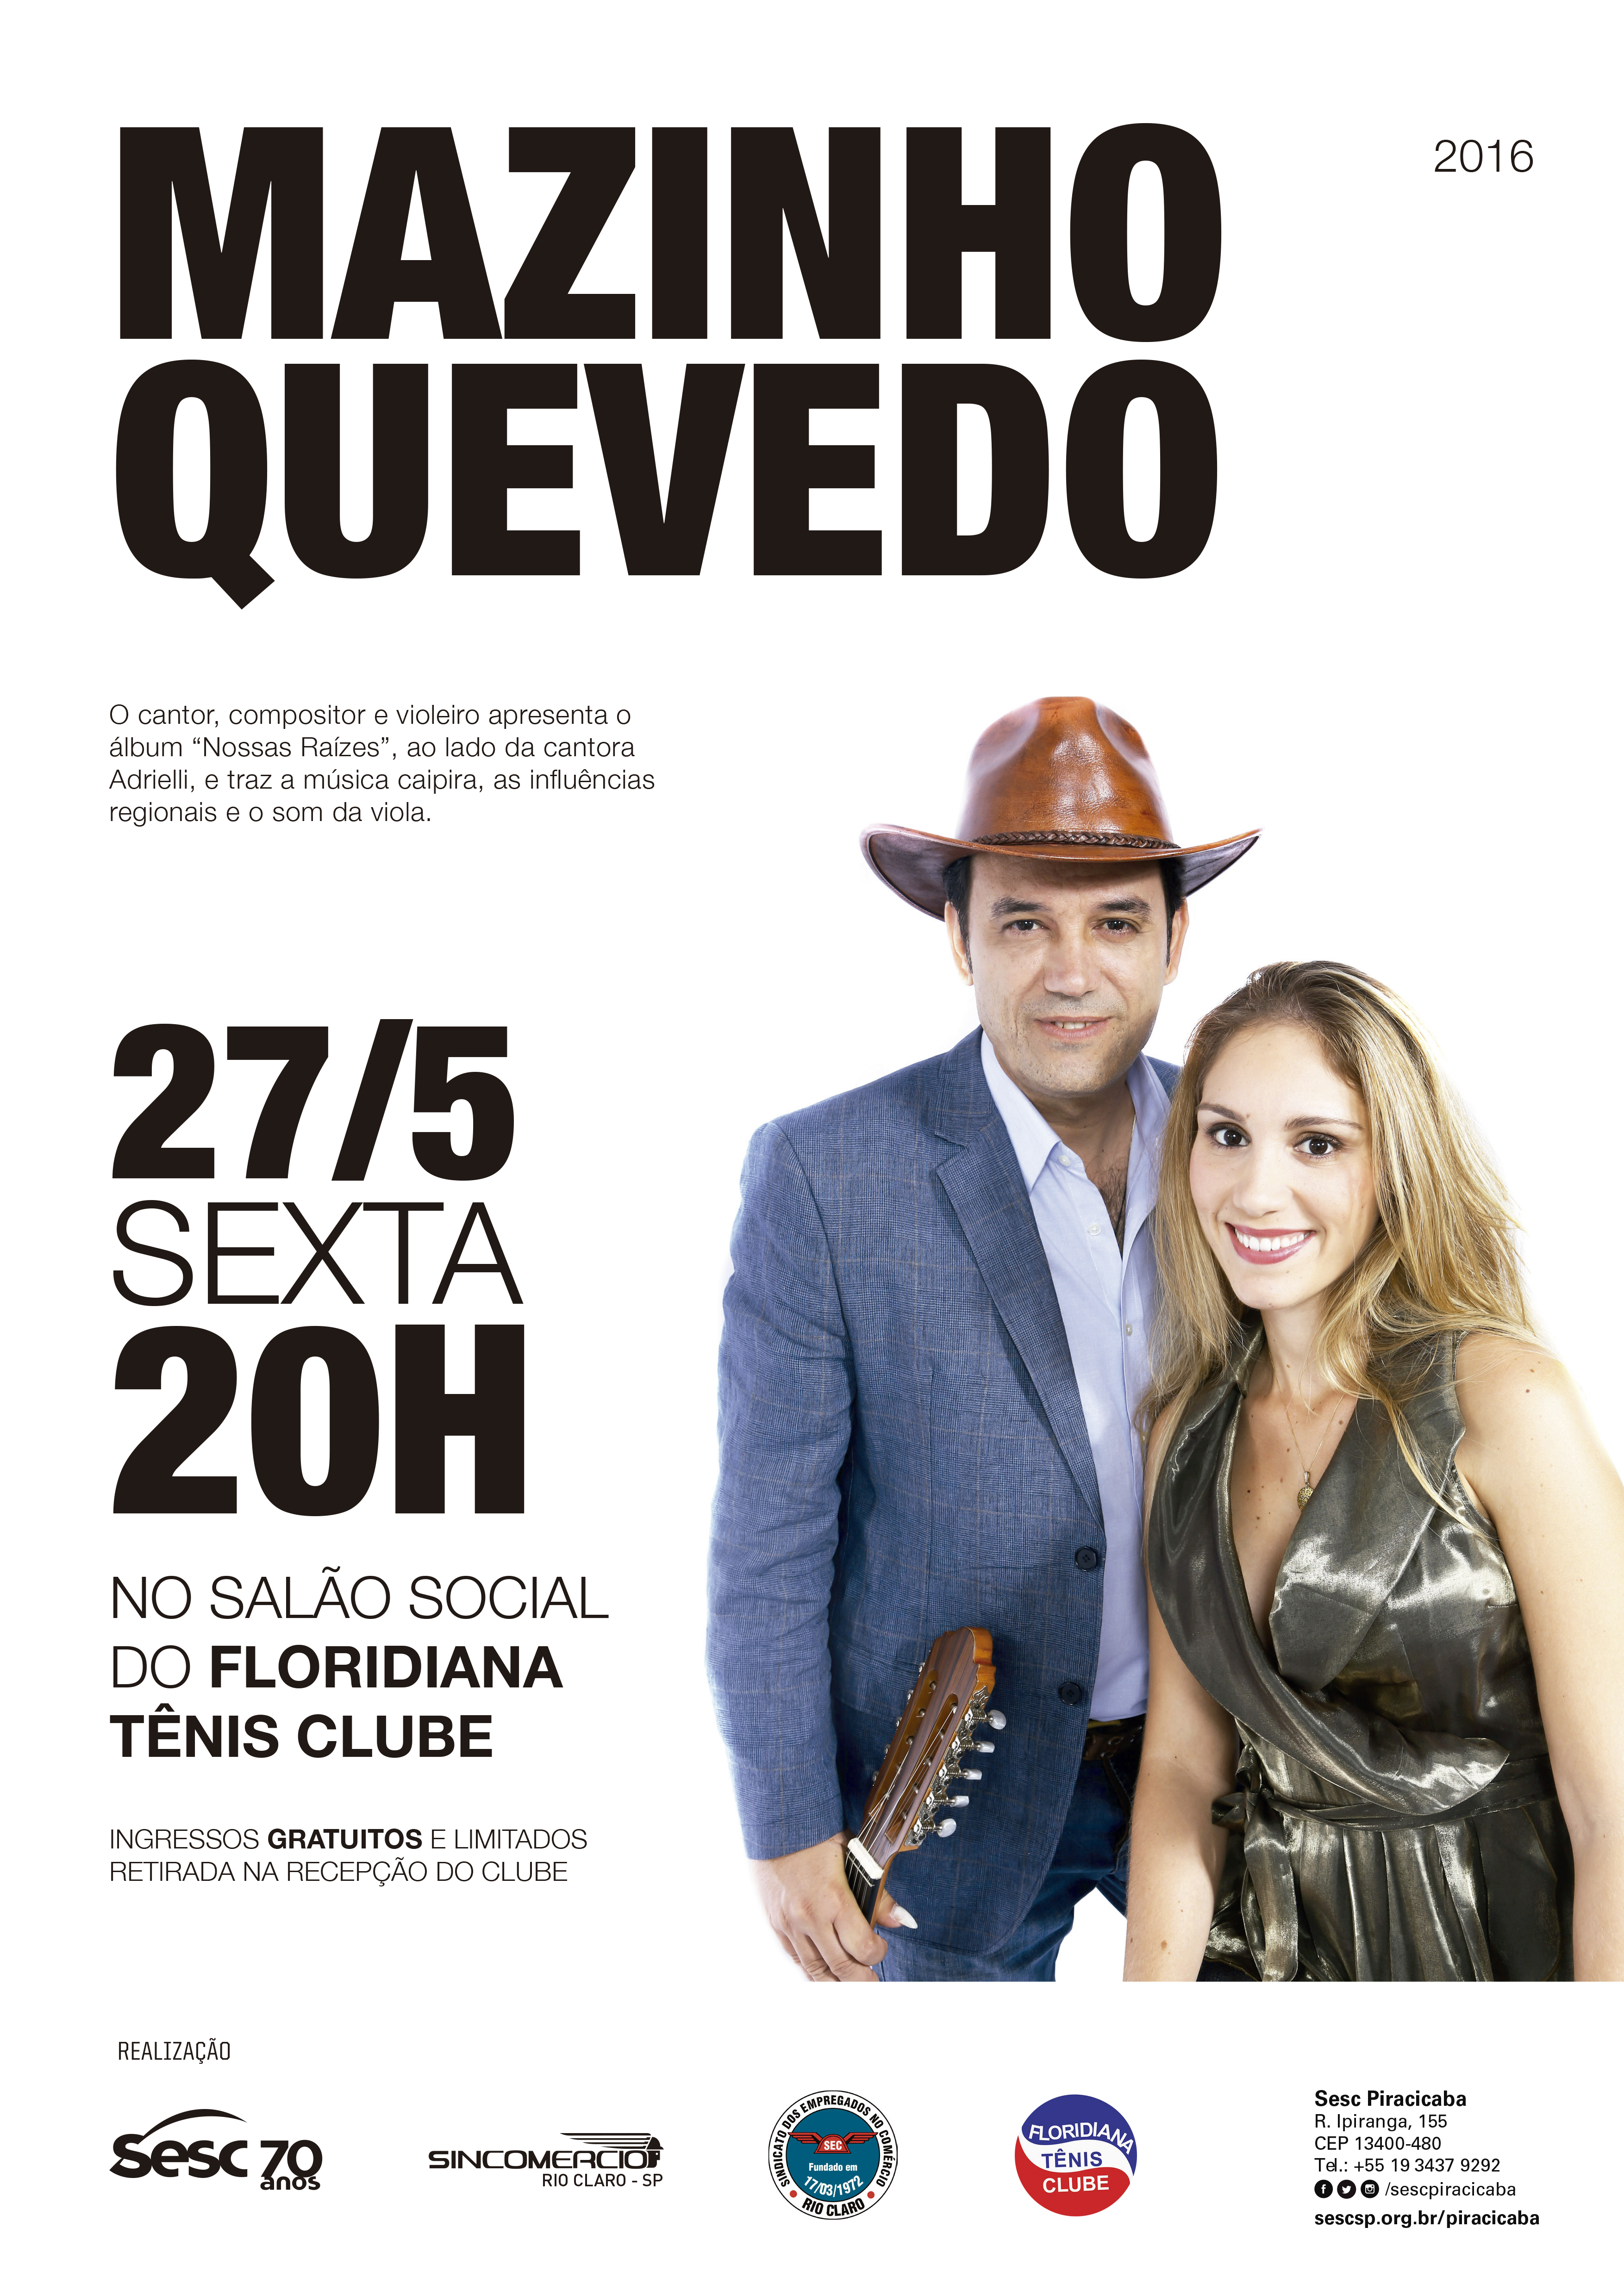 O violeiro Mazinho Quevedo lança novo CD em show gratuito no Sesc